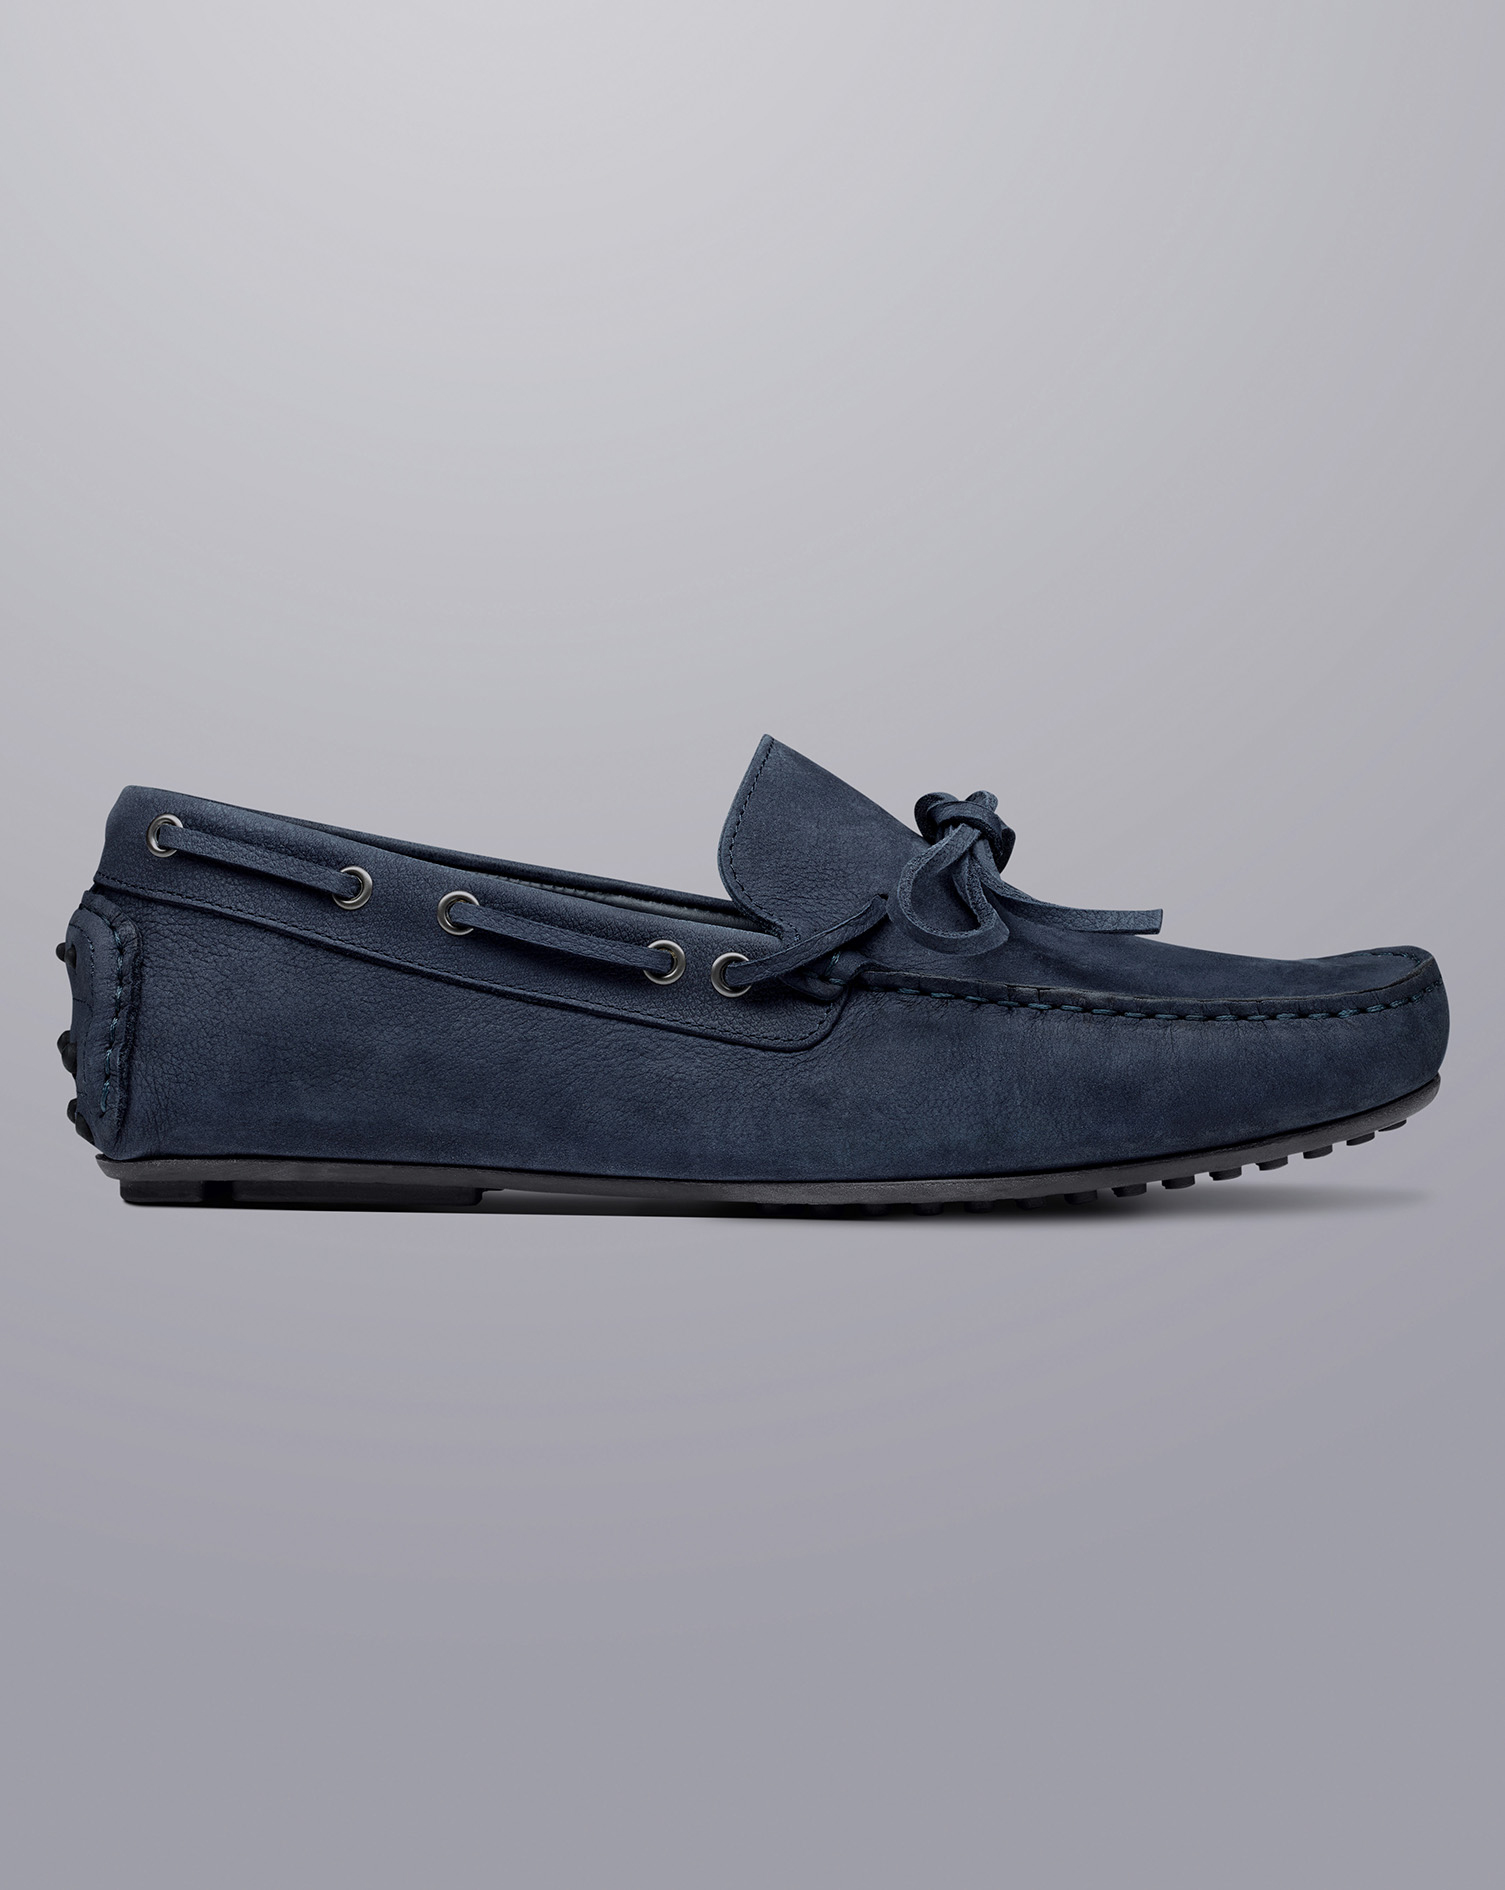 Men's Charles Tyrwhitt Driving Loafers - Navy Blue Size 11 Nubuck
